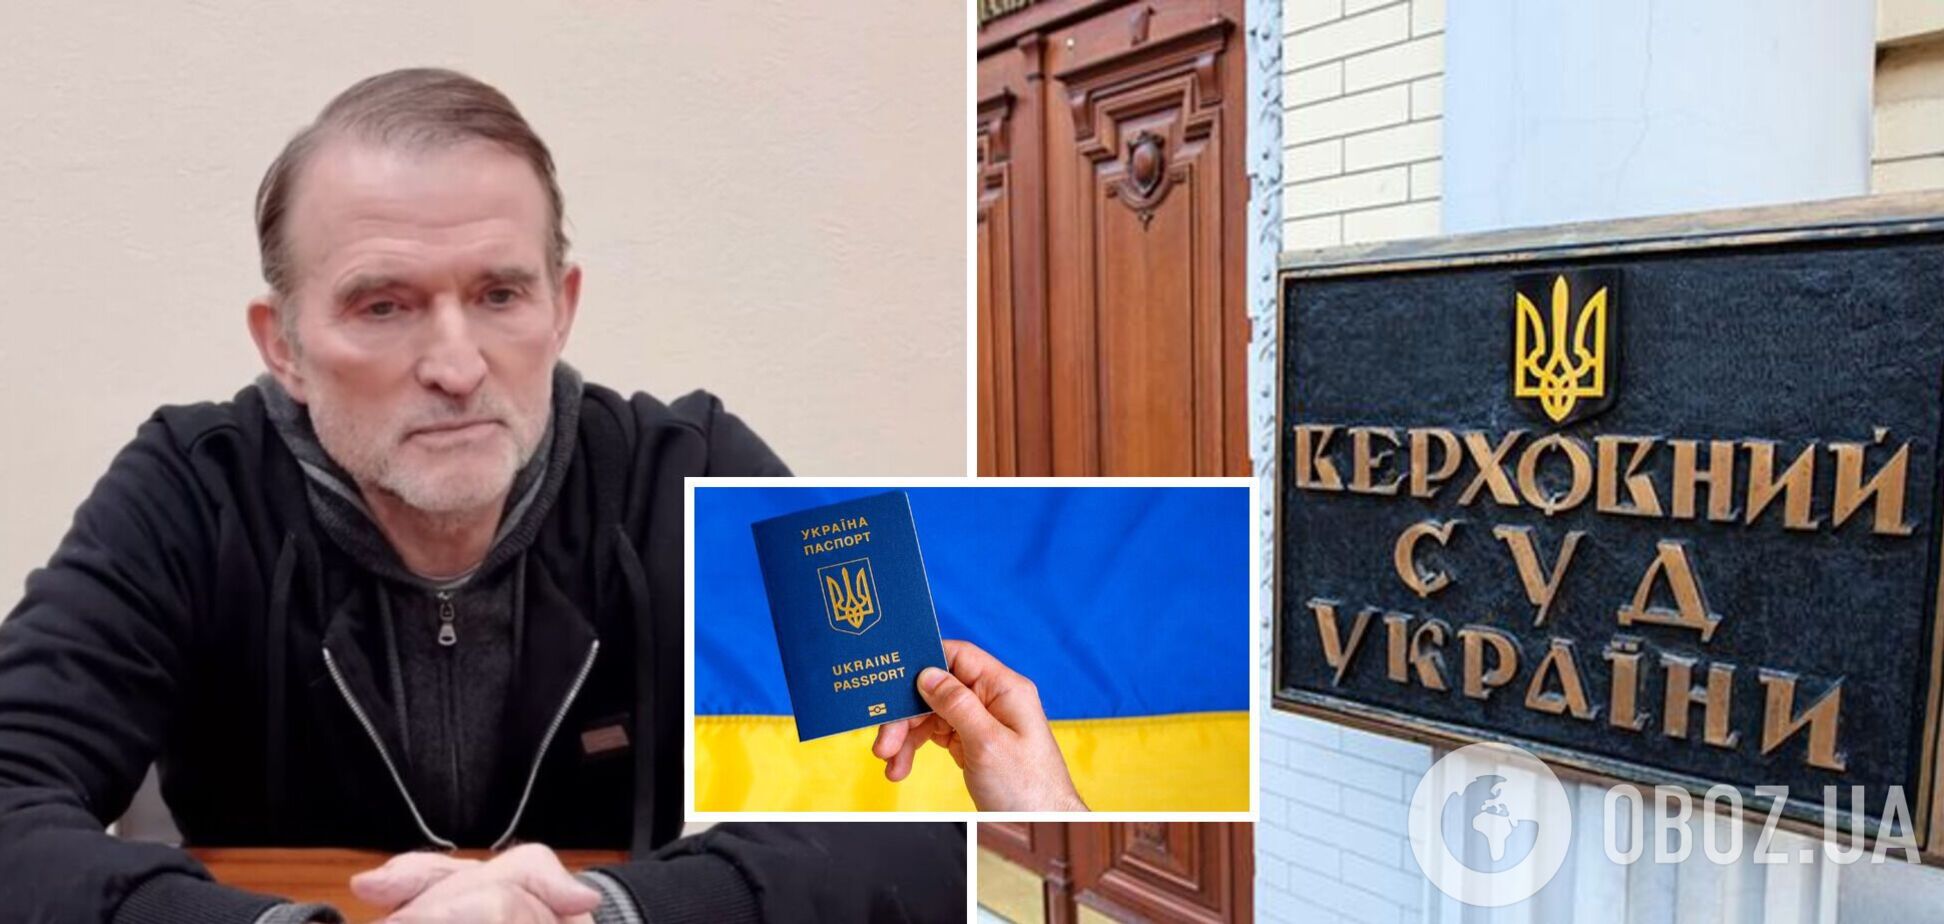 Кум Путіна Медведчук через суд вимагає повернути йому українське громадянство і депутатський мандат: спливли подробиці